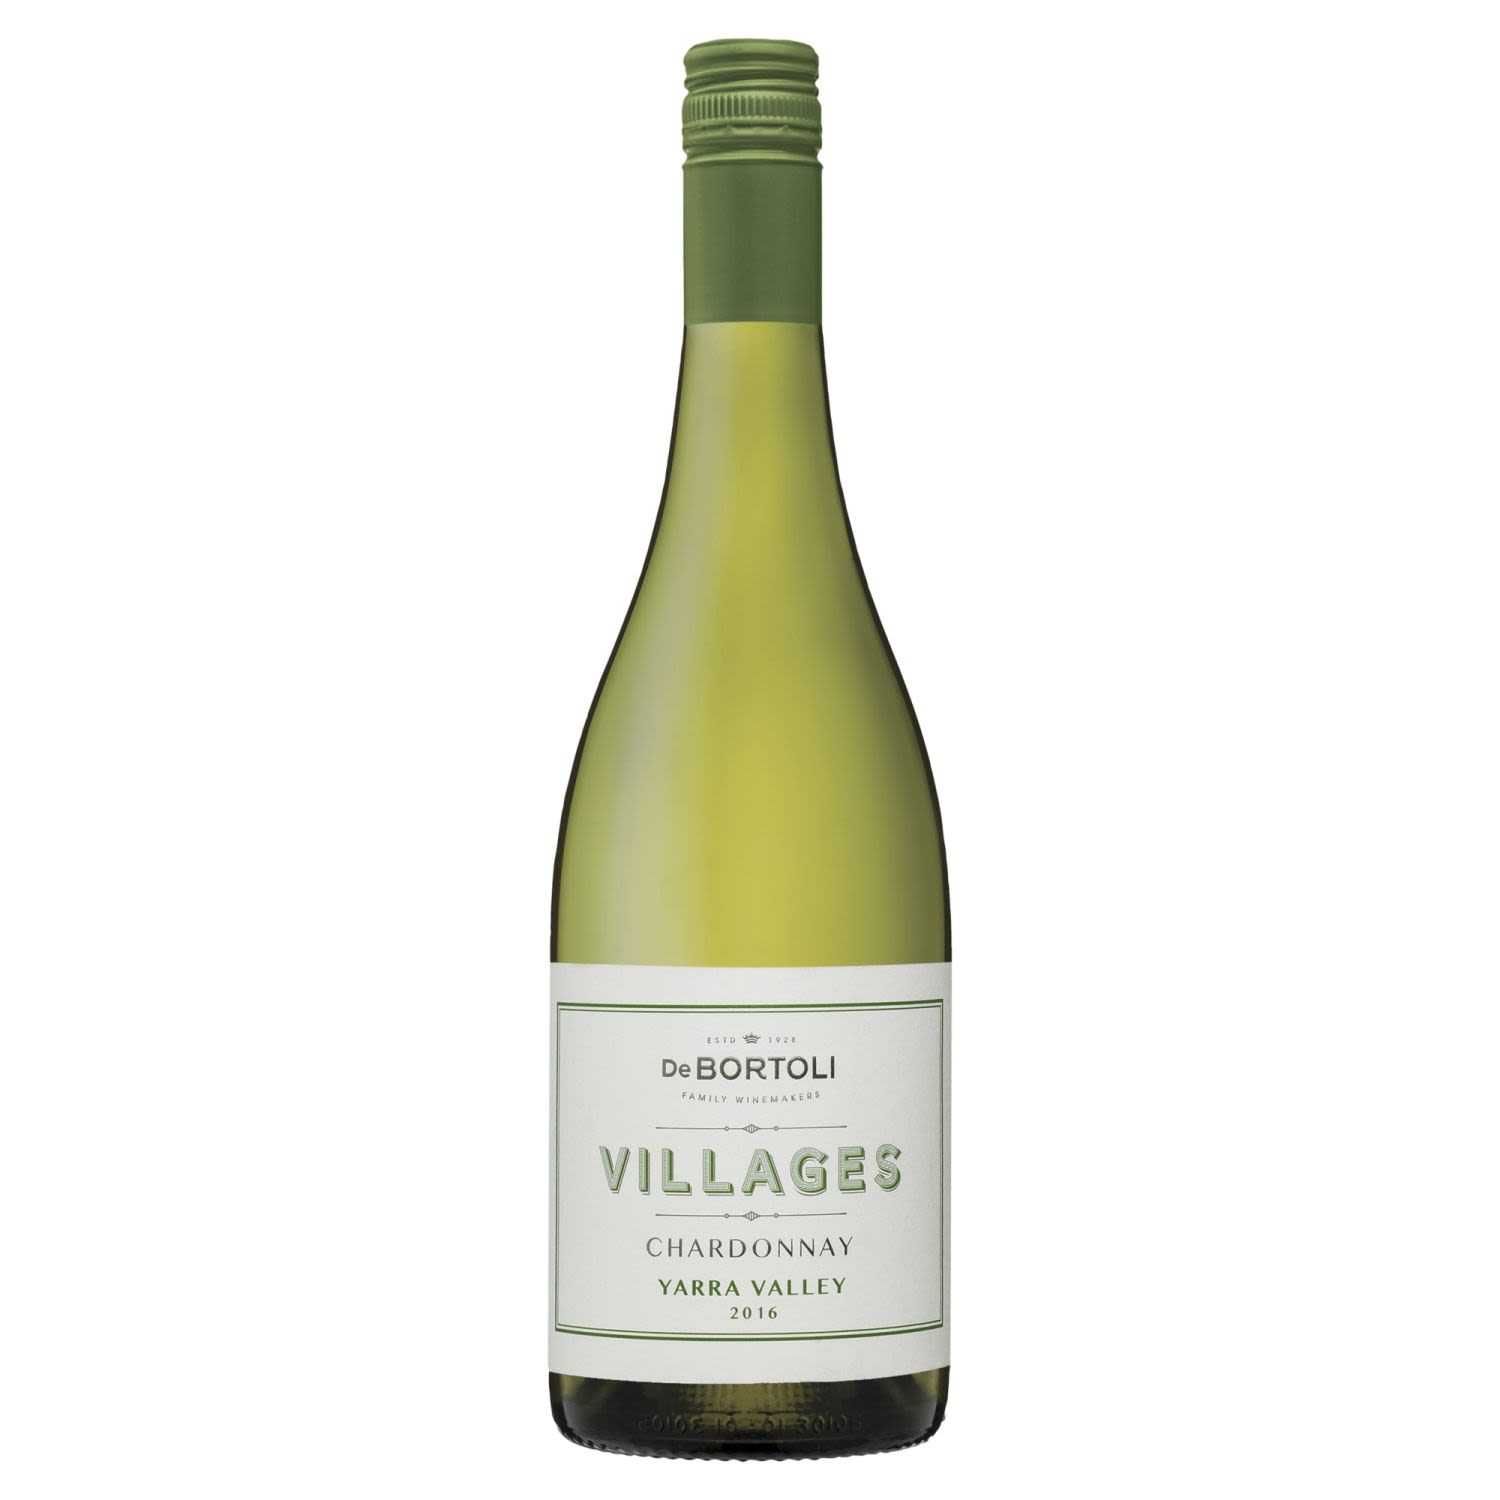 De Bortoli Villages Yarra Valley Chardonnay<br /> <br />Alcohol Volume: 12.50%<br /><br />Pack Format: Bottle<br /><br />Standard Drinks: 7.4</br /><br />Pack Type: Bottle<br /><br />Country of Origin: Australia<br /><br />Region: Yarra Valley<br /><br />Vintage: '2016<br />